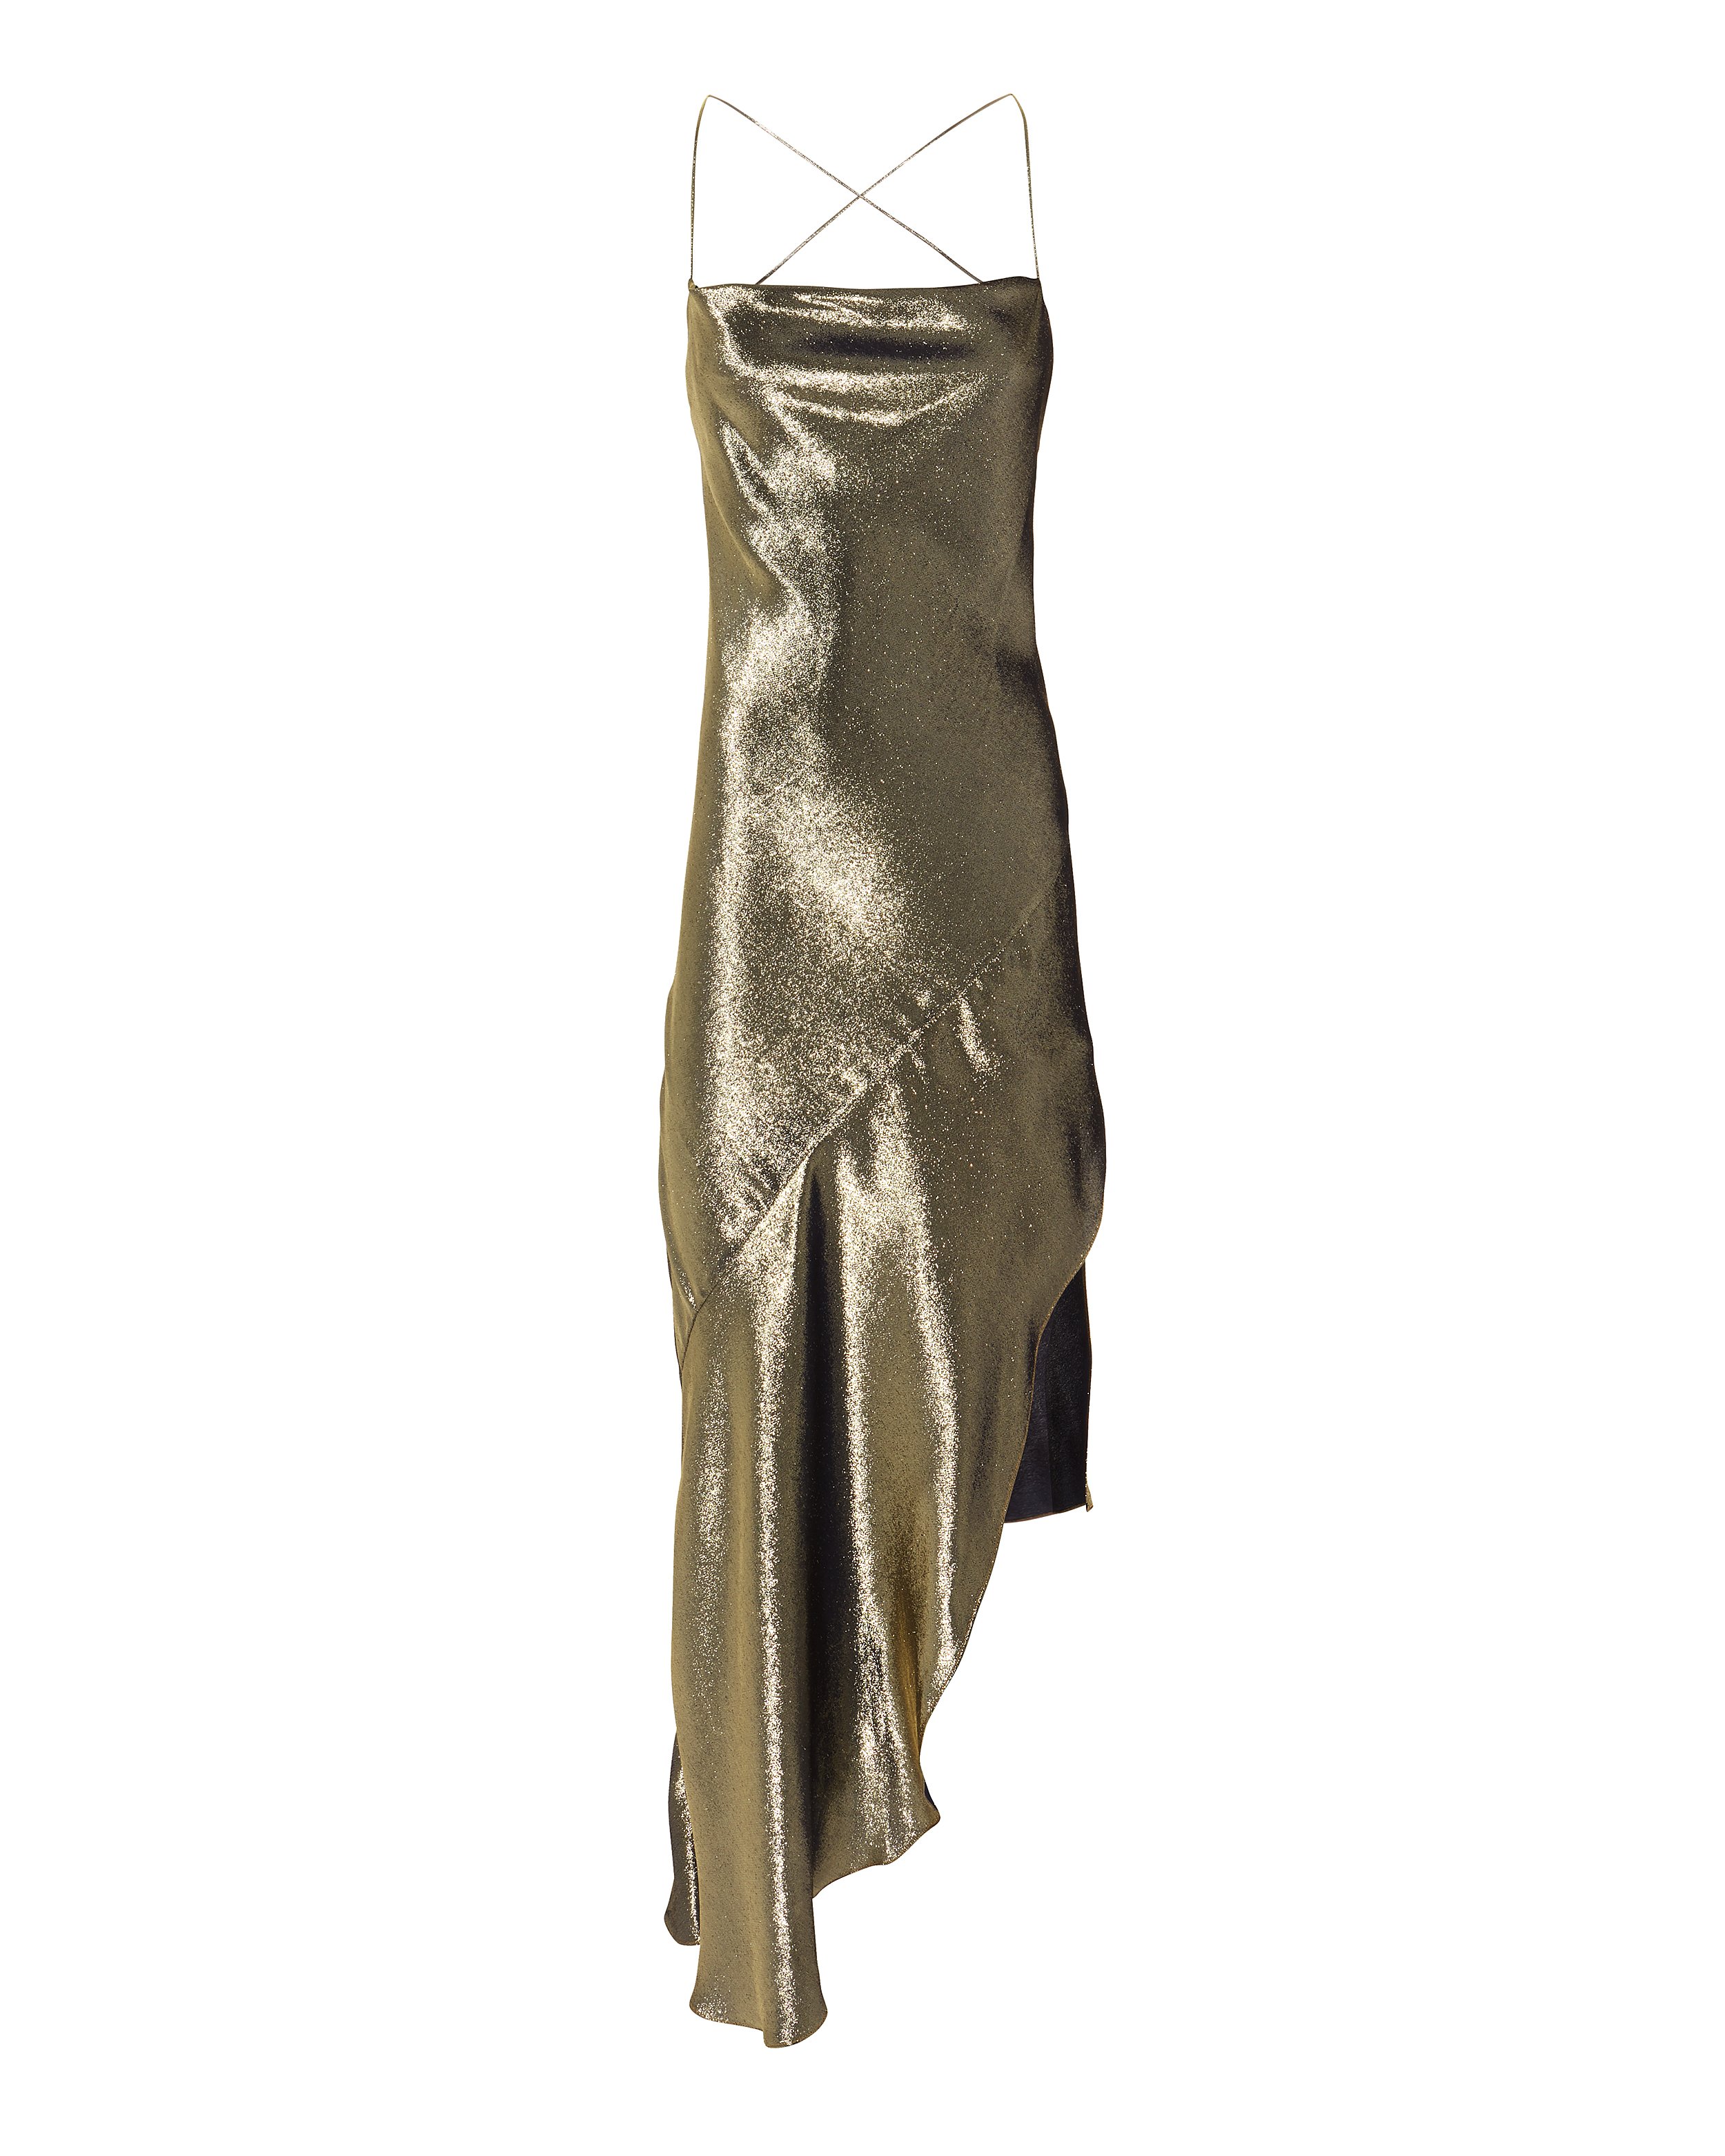 HANEY Goldie Dress,P18-5225